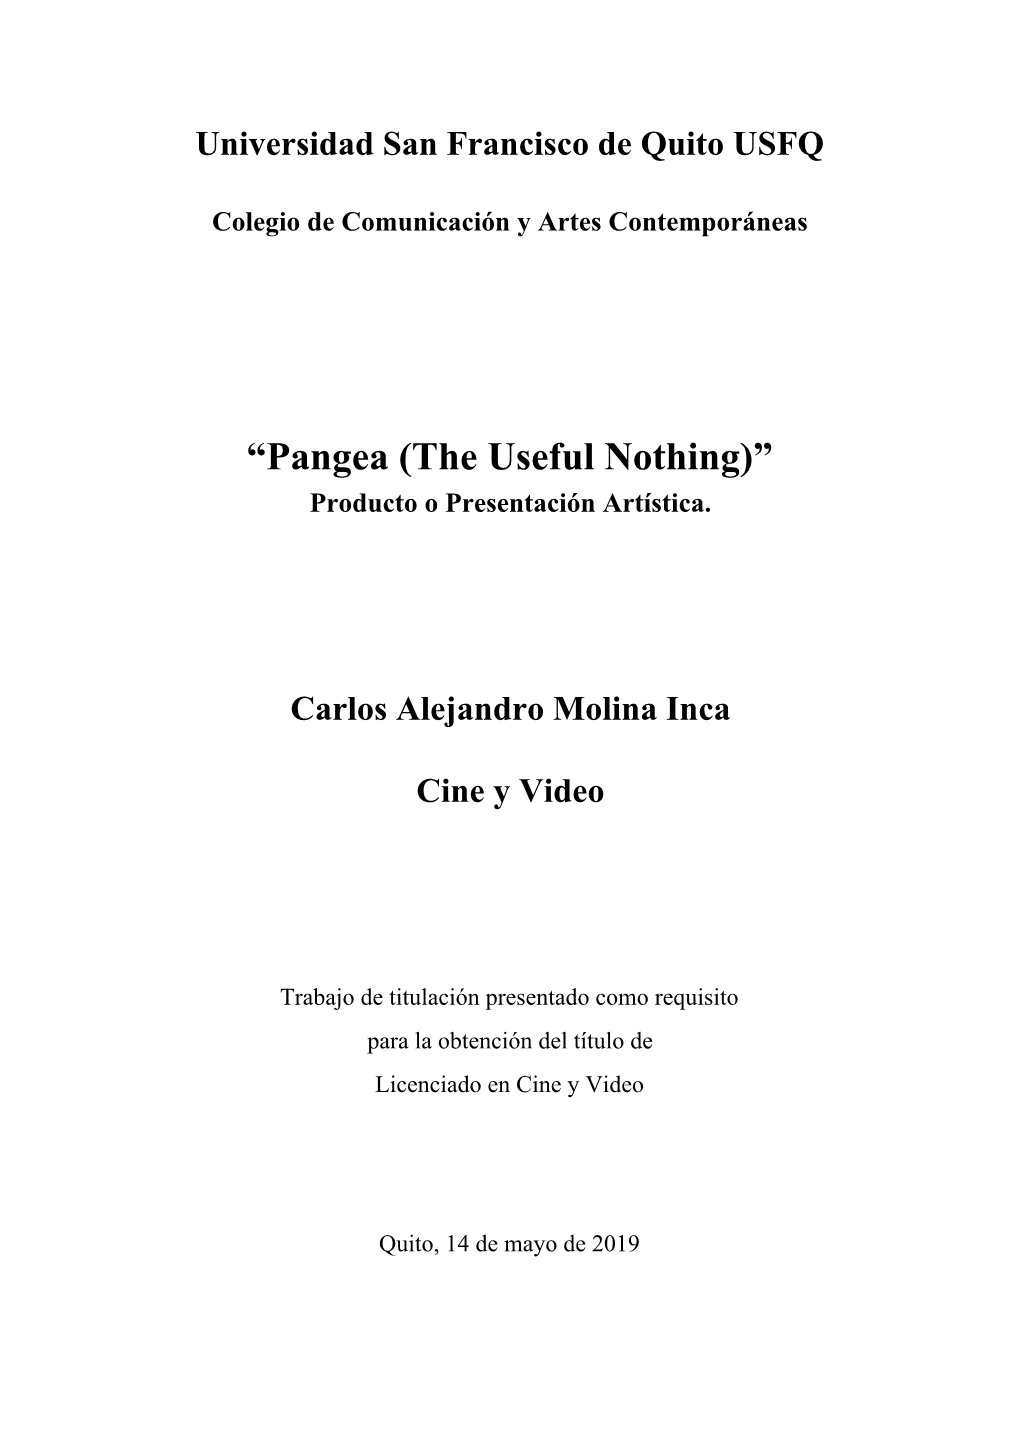 “Pangea (The Useful Nothing)” Producto O Presentación Artística